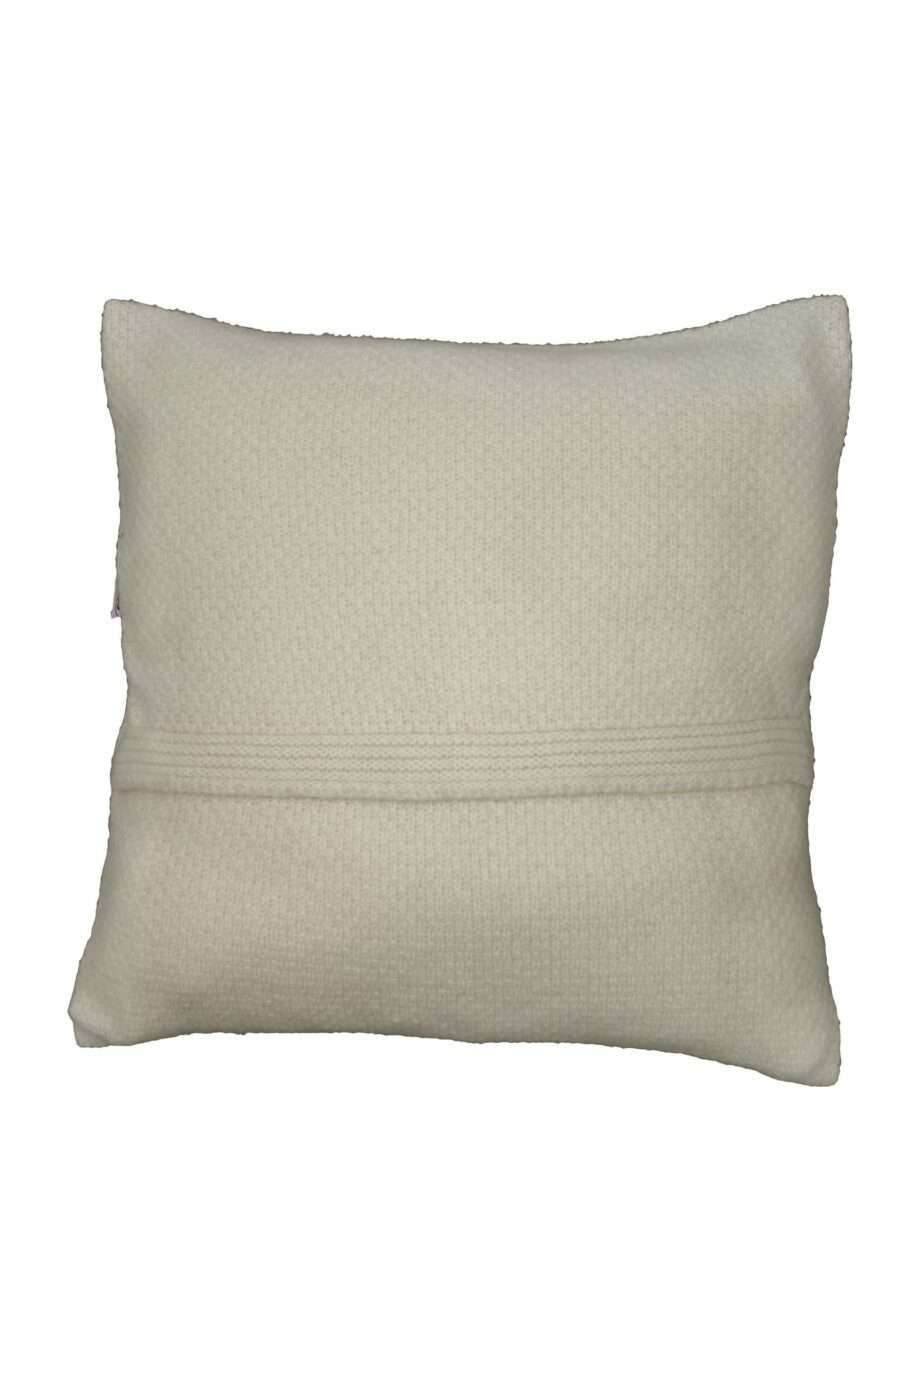 rice ecru knitted woolen pillowcase xsmall